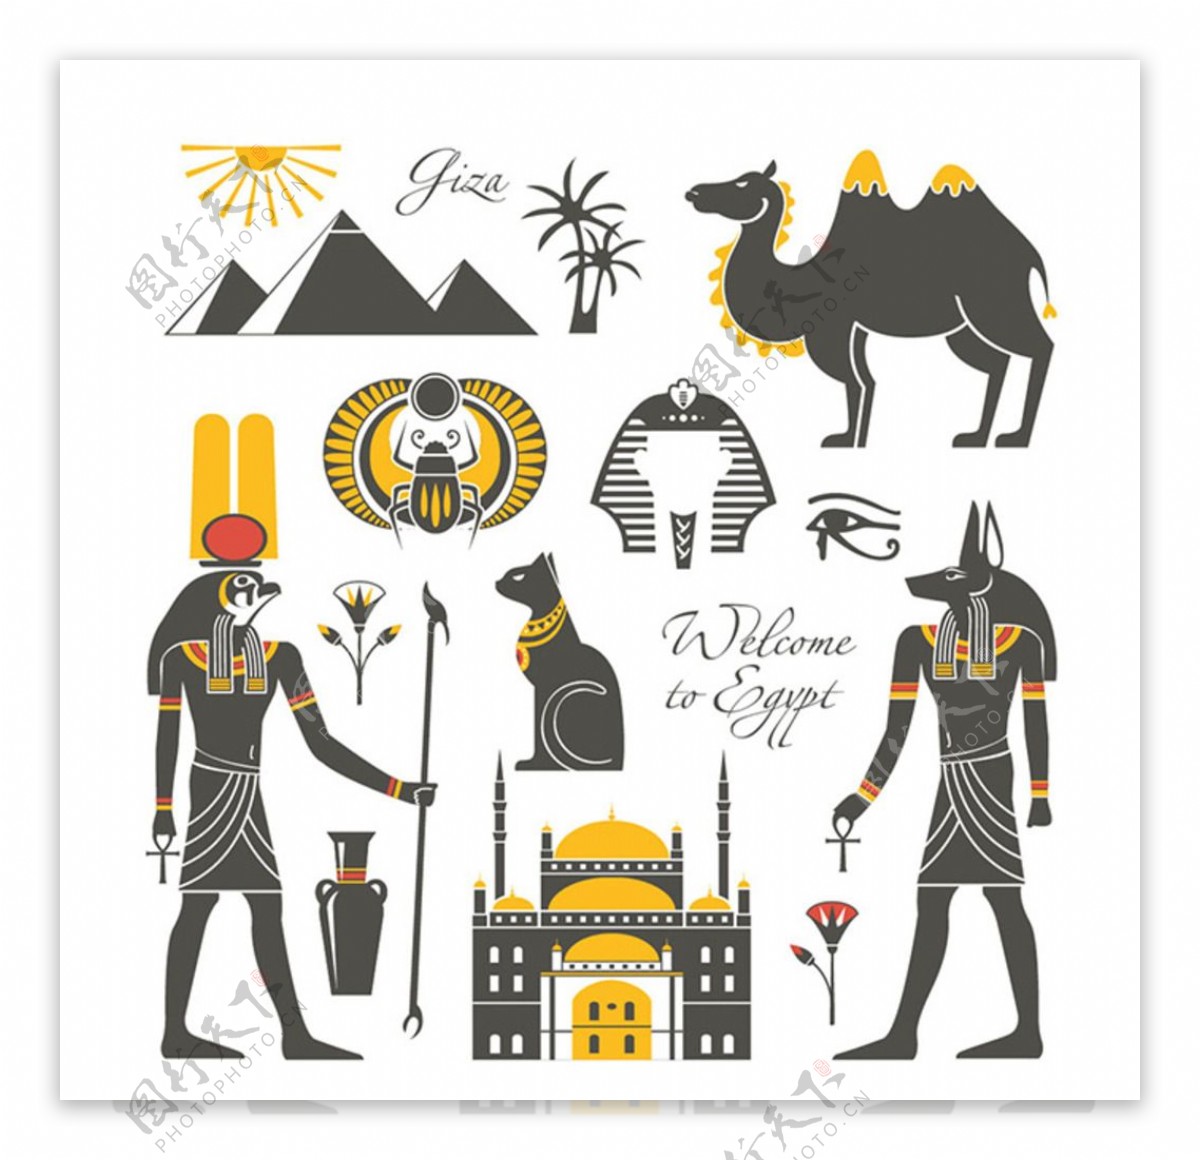 古埃及文化符号